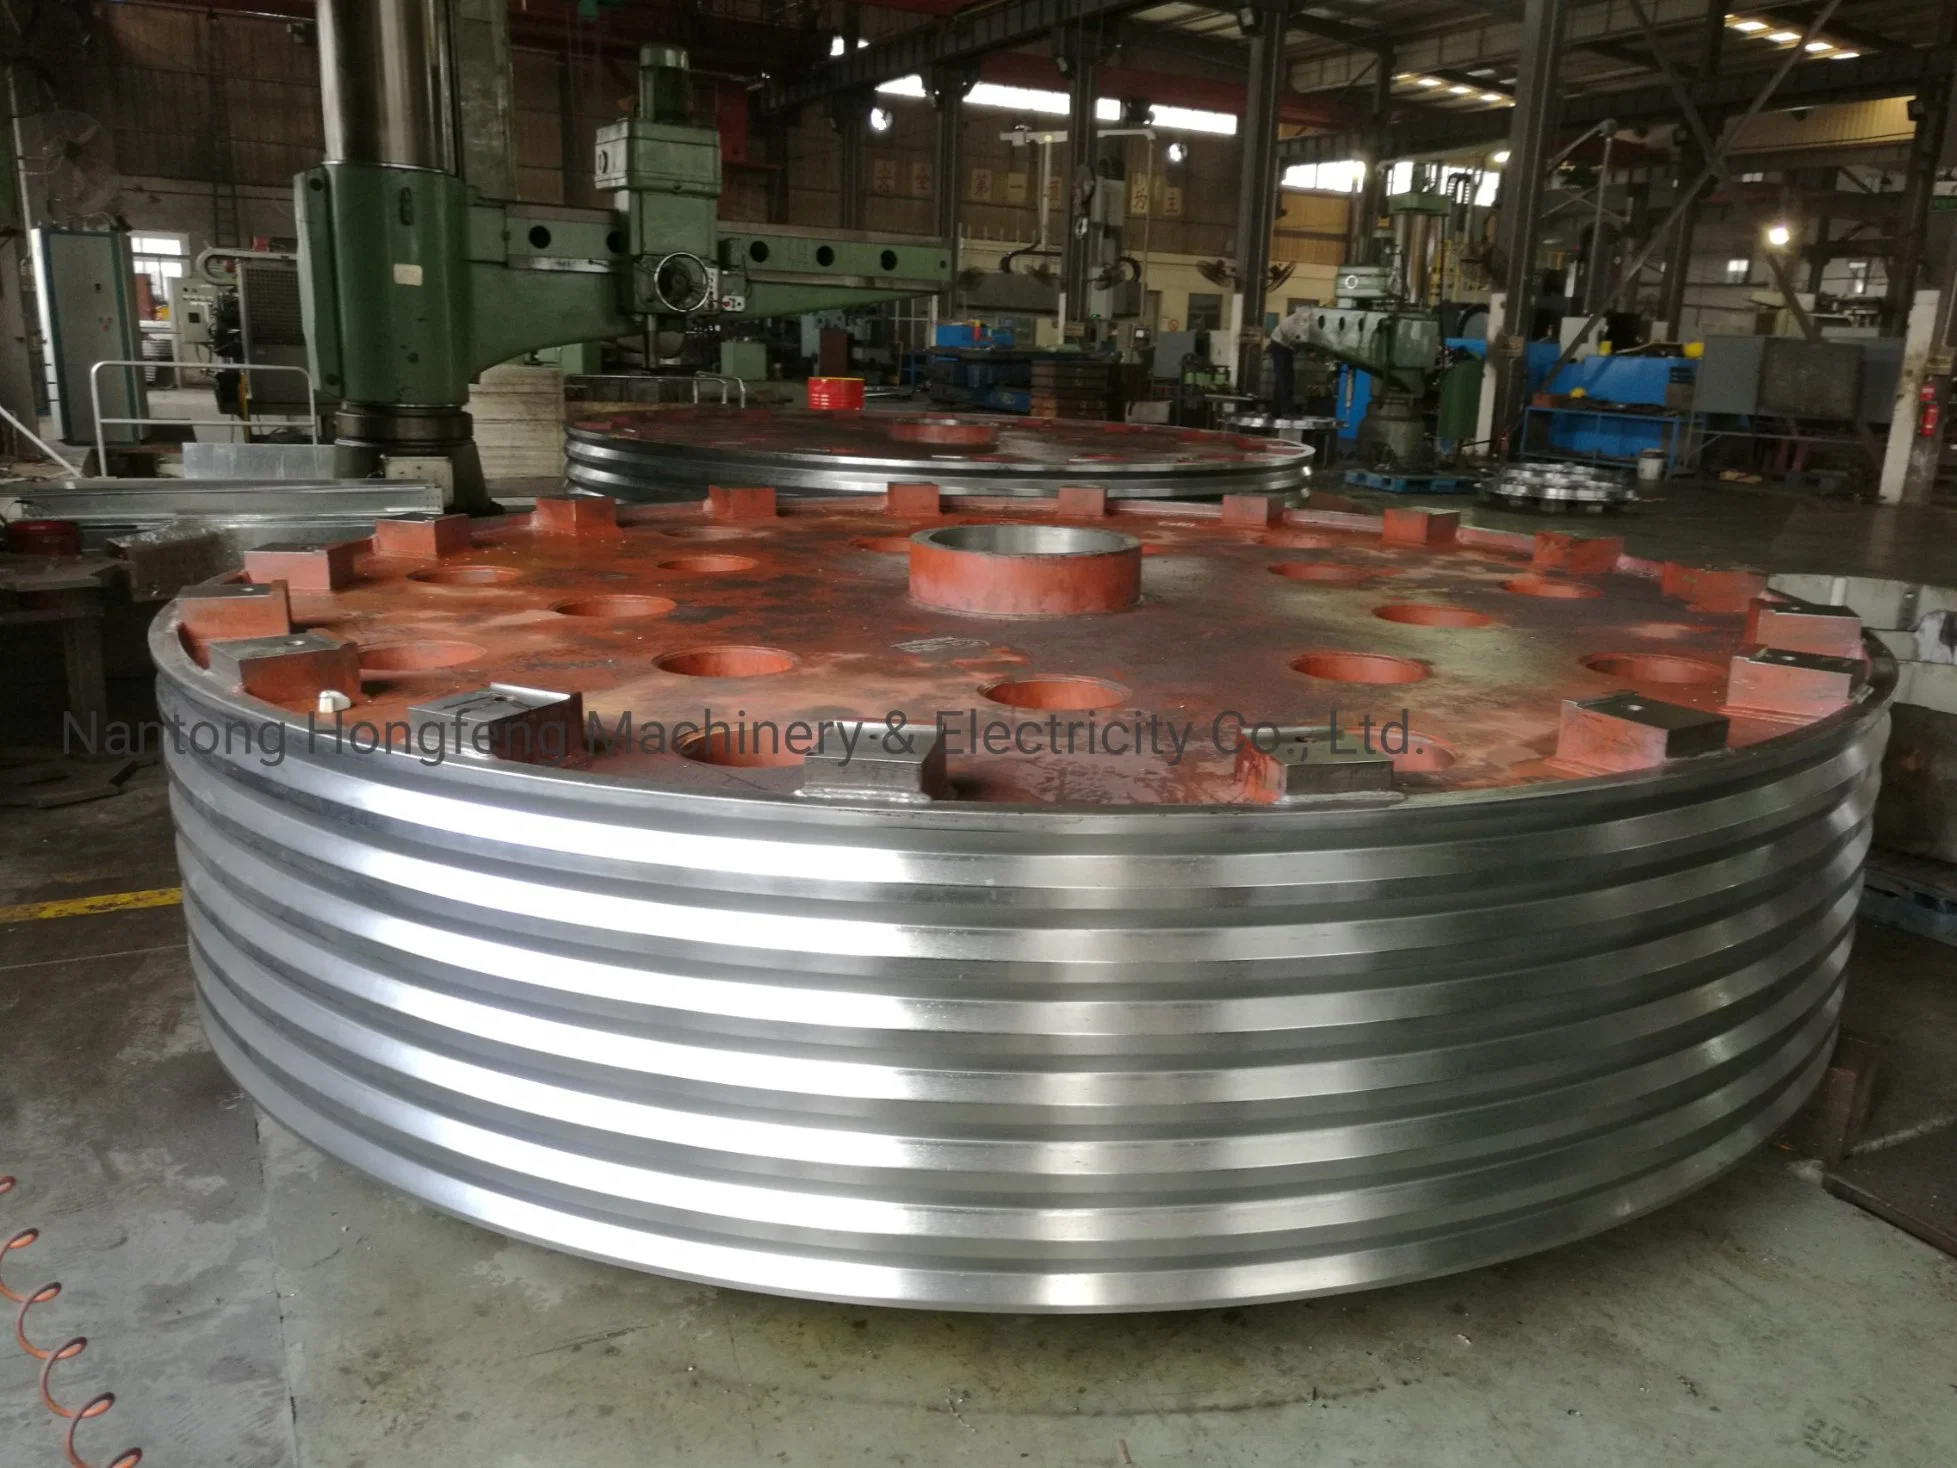 Fabricado en China OEM pieza de carcasa de acero pesado de precisión Maquinaria Corte láser soldadura